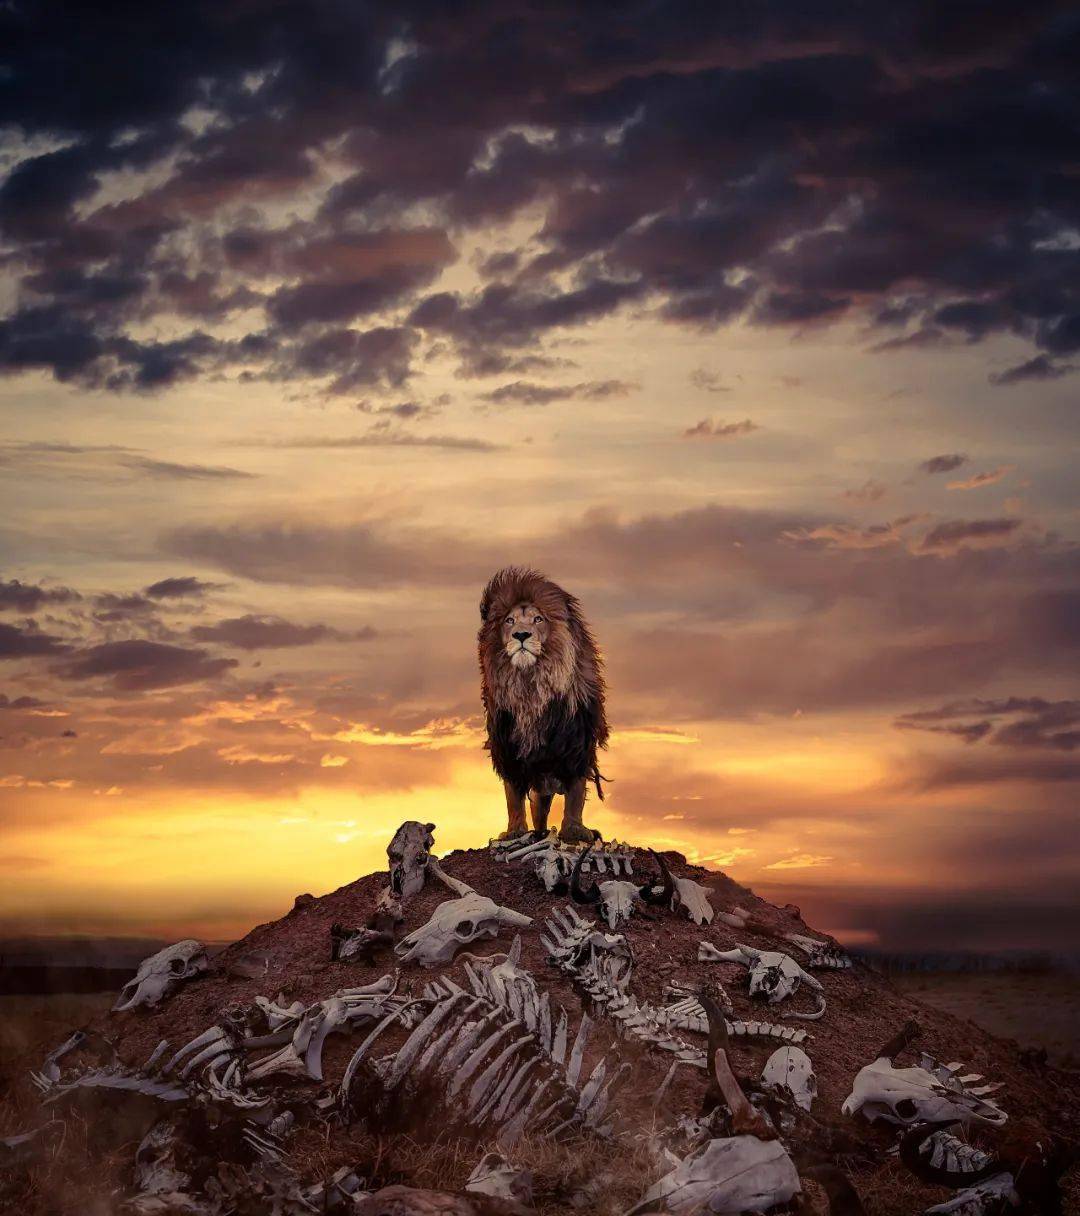 狮子站在尸骨堆积的山上威风凛凛